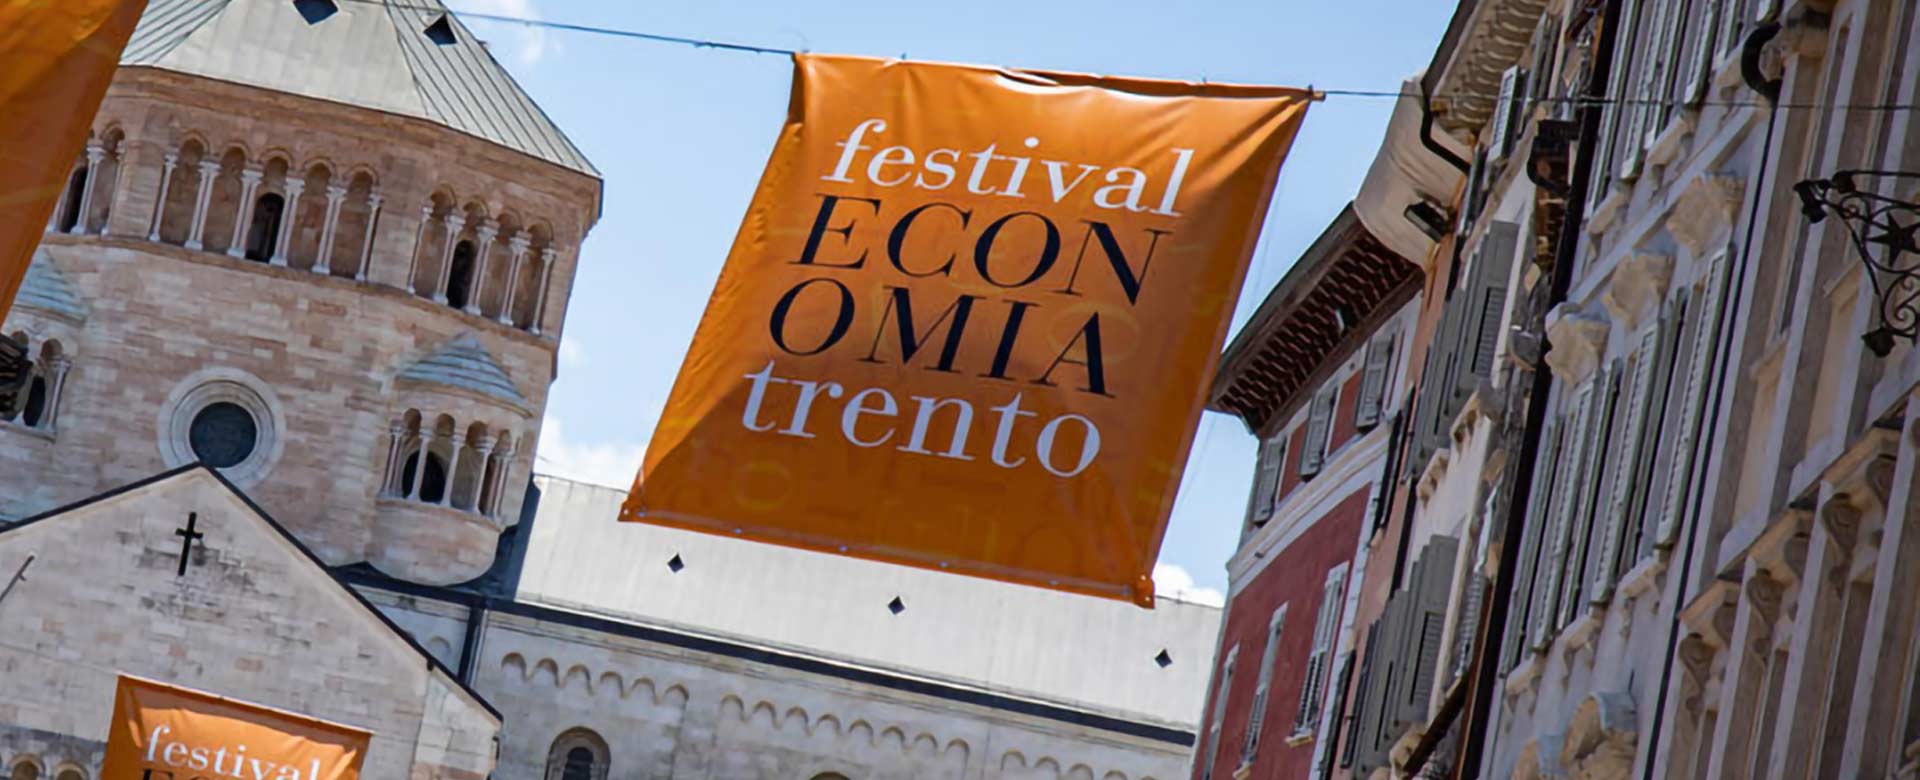 Trento durante il Festival dell'economia